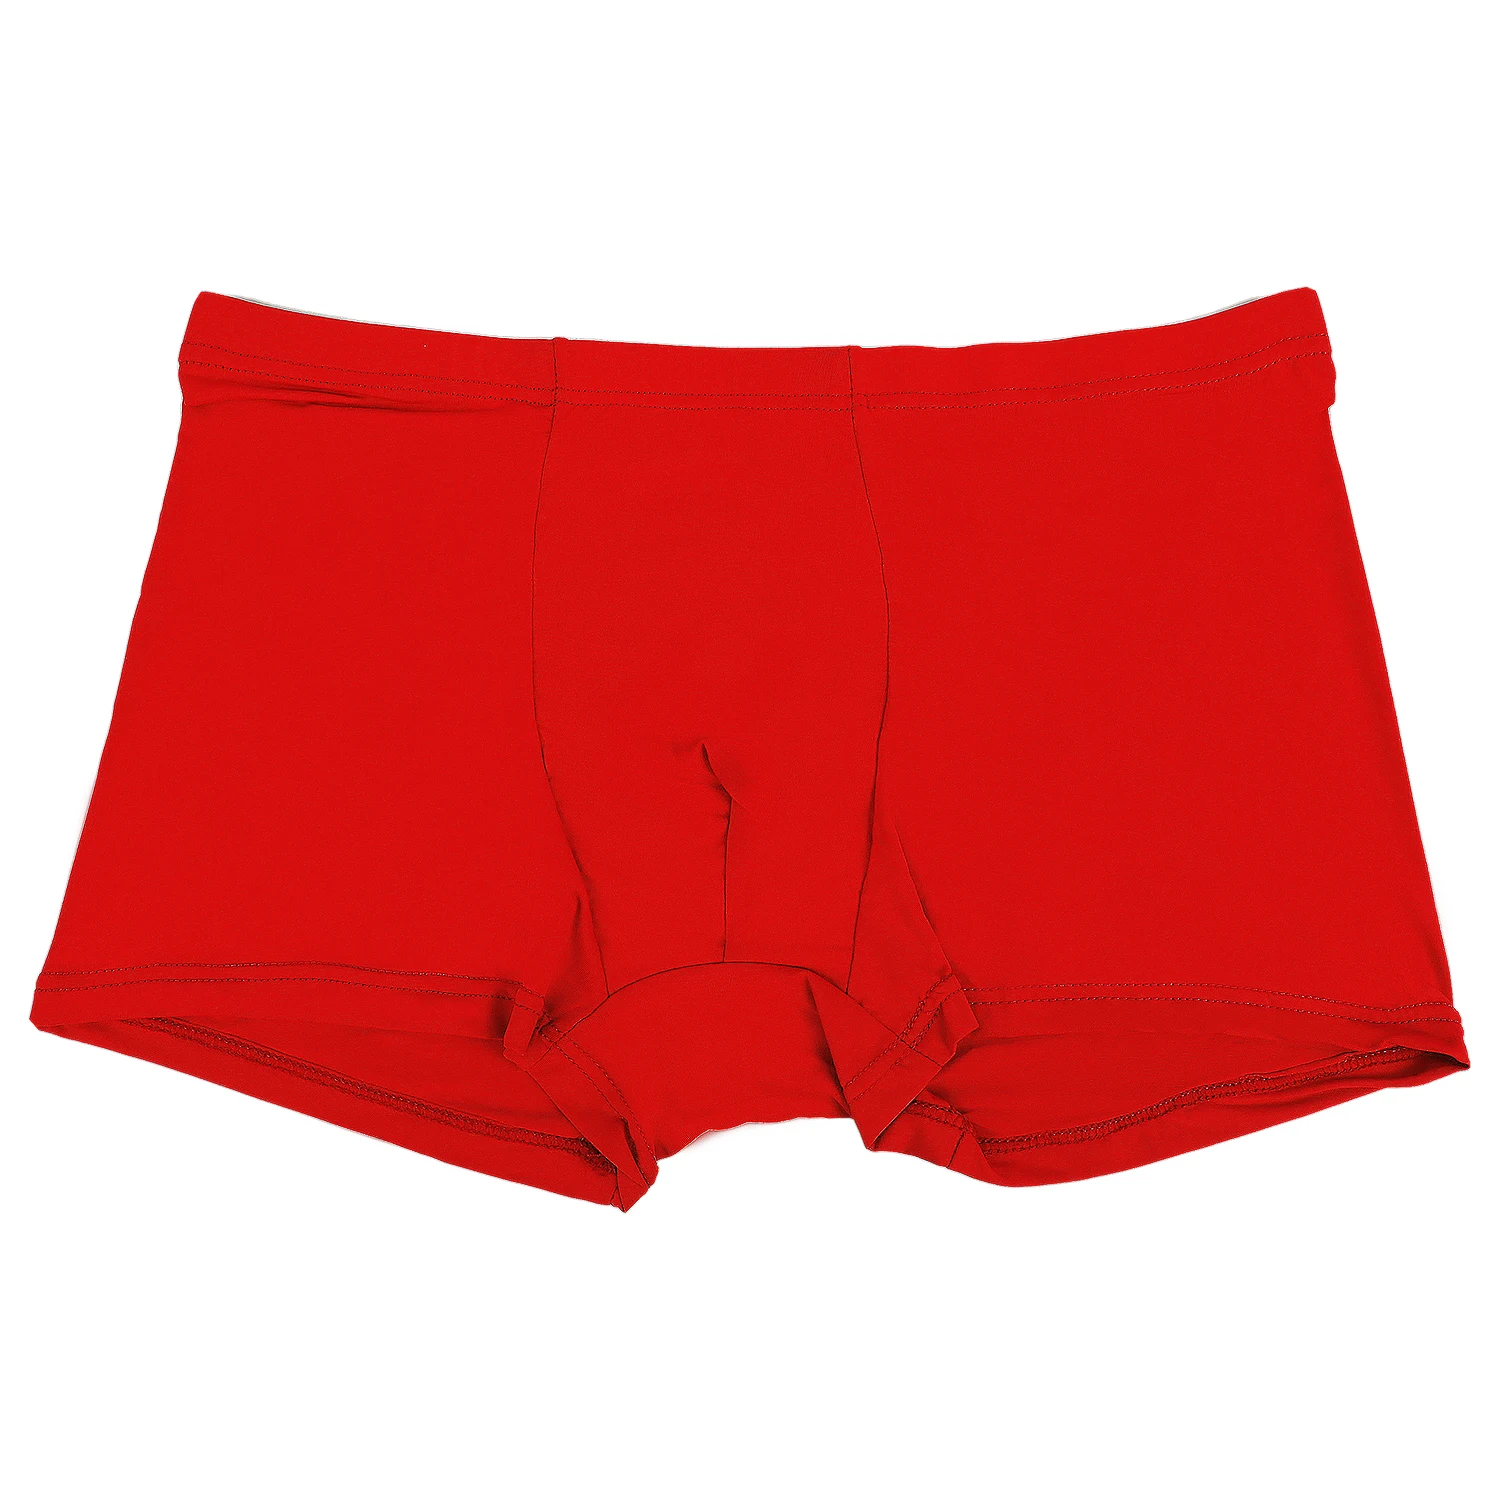 Men's Panties Boxer Short Comfortable Breathable Cool Underpants